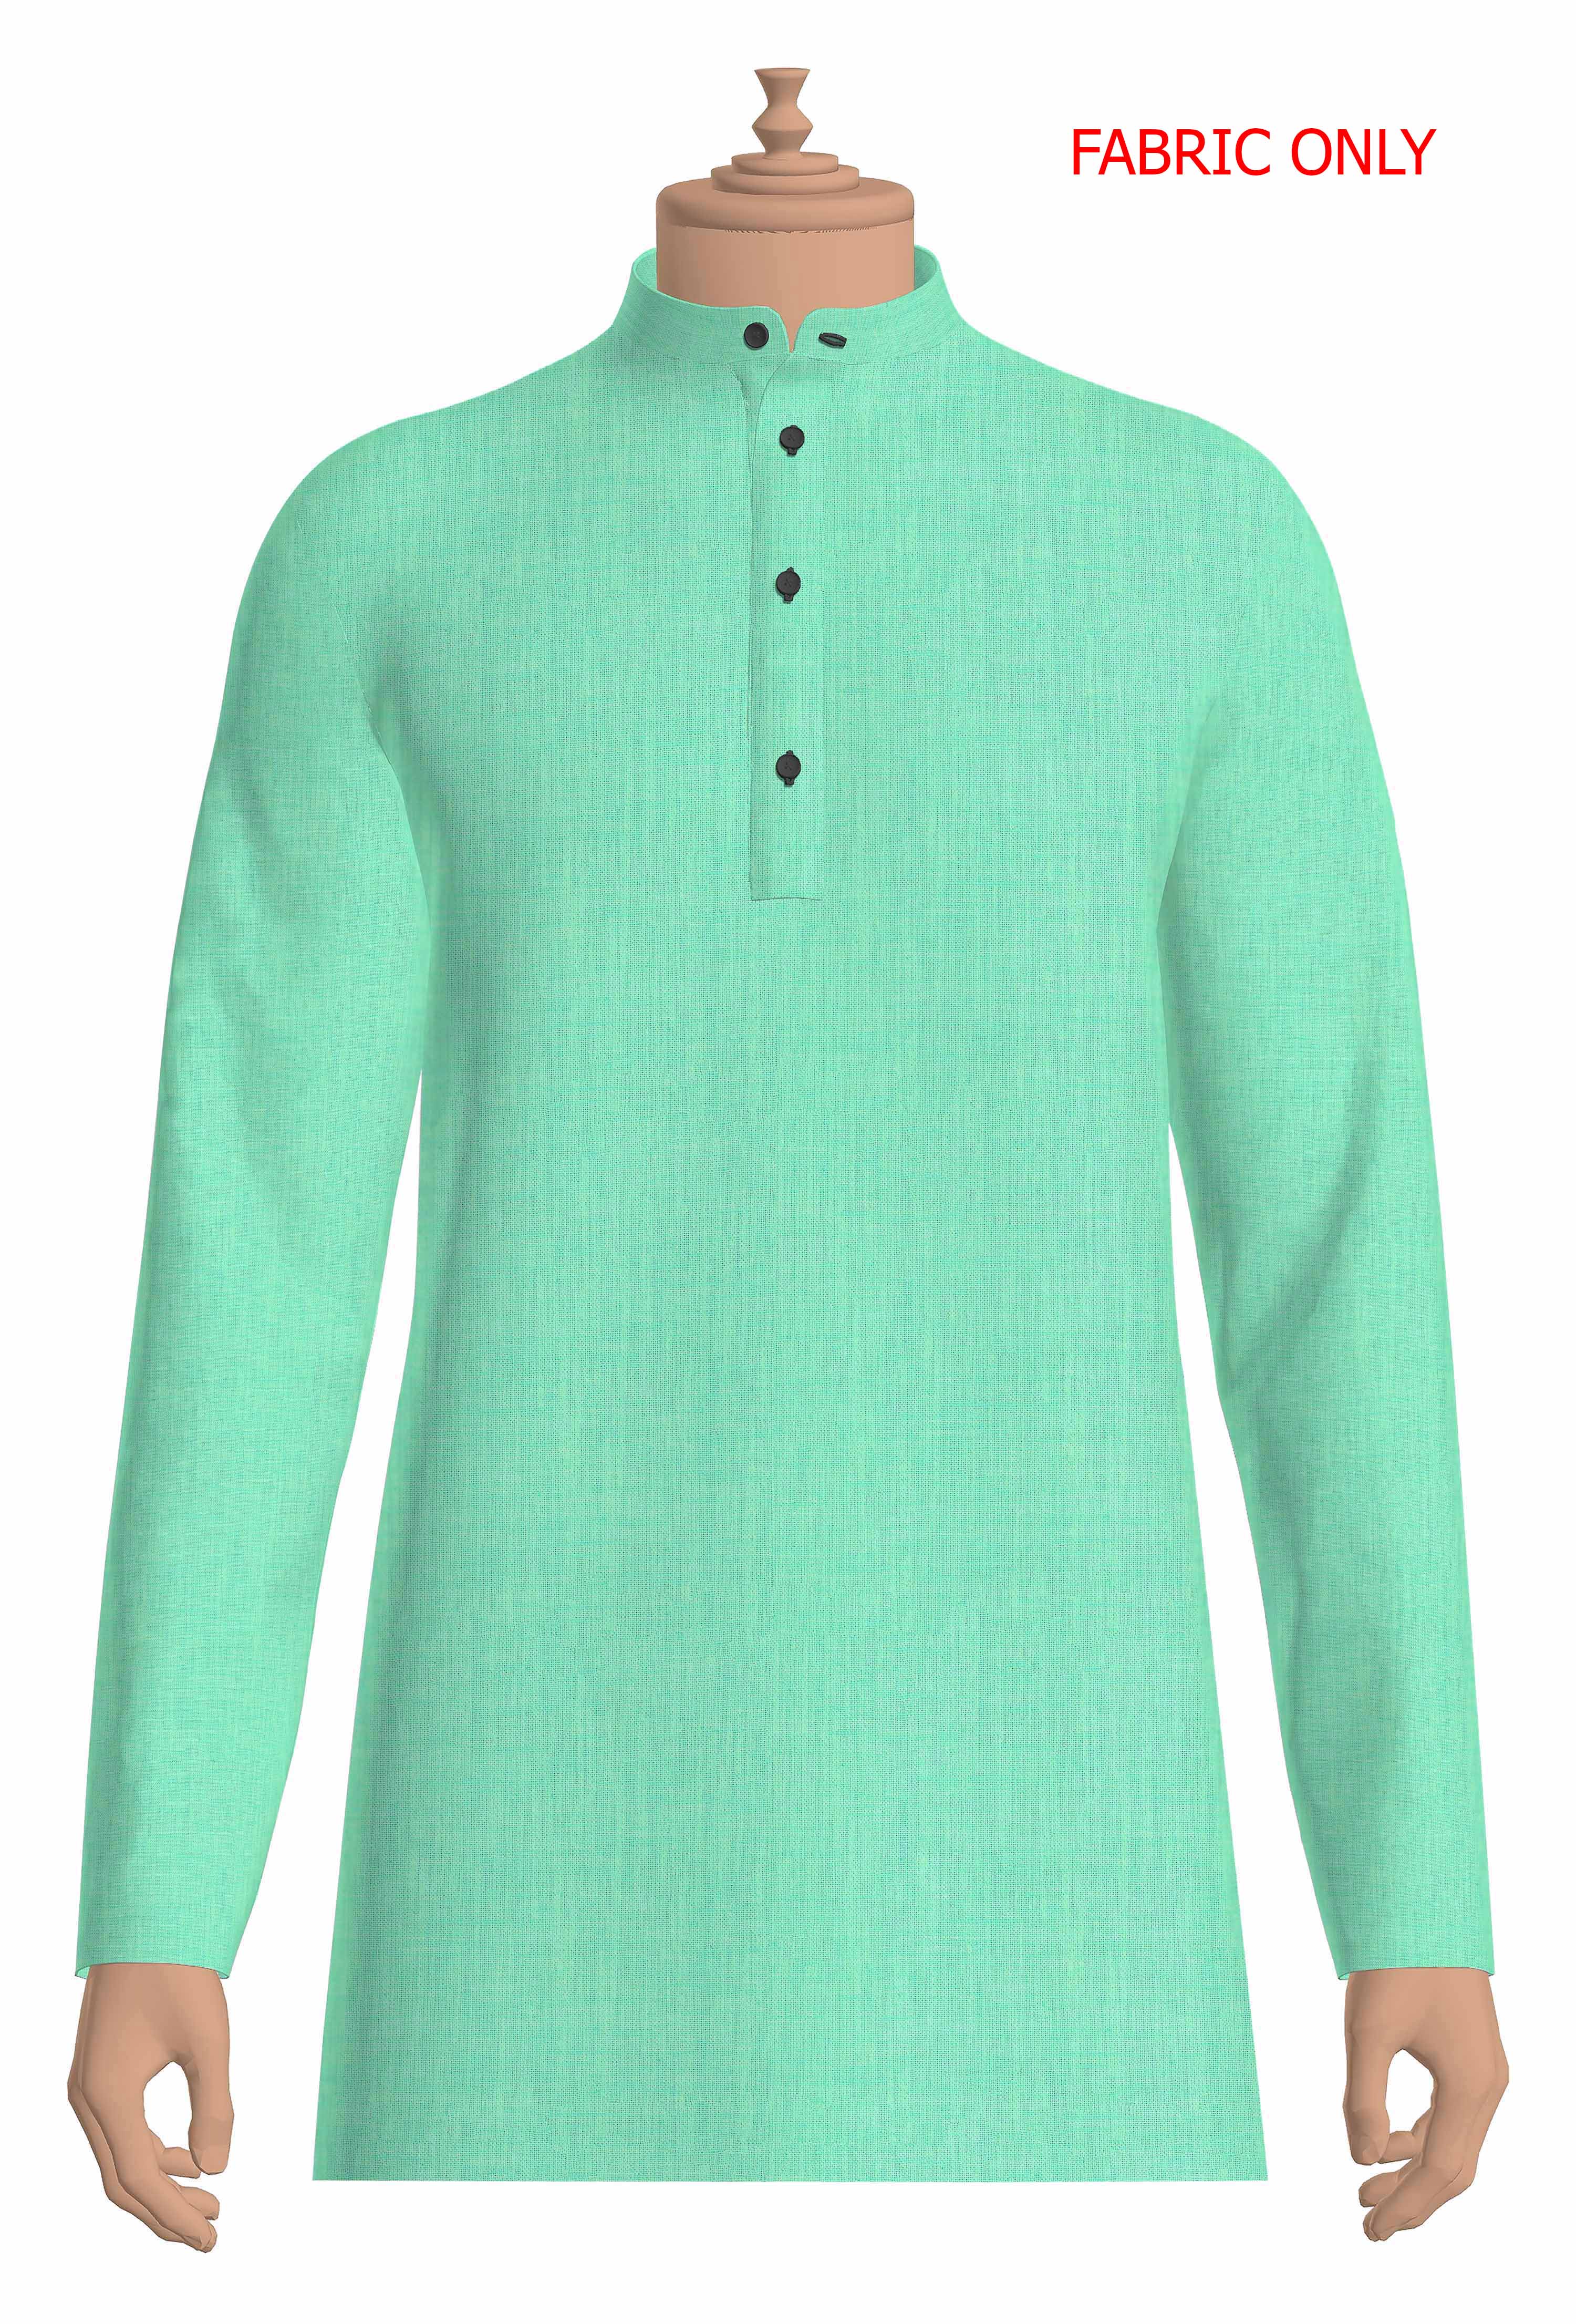 Cotton Blend Lite Green Colour Kurtha Fabric Lampus